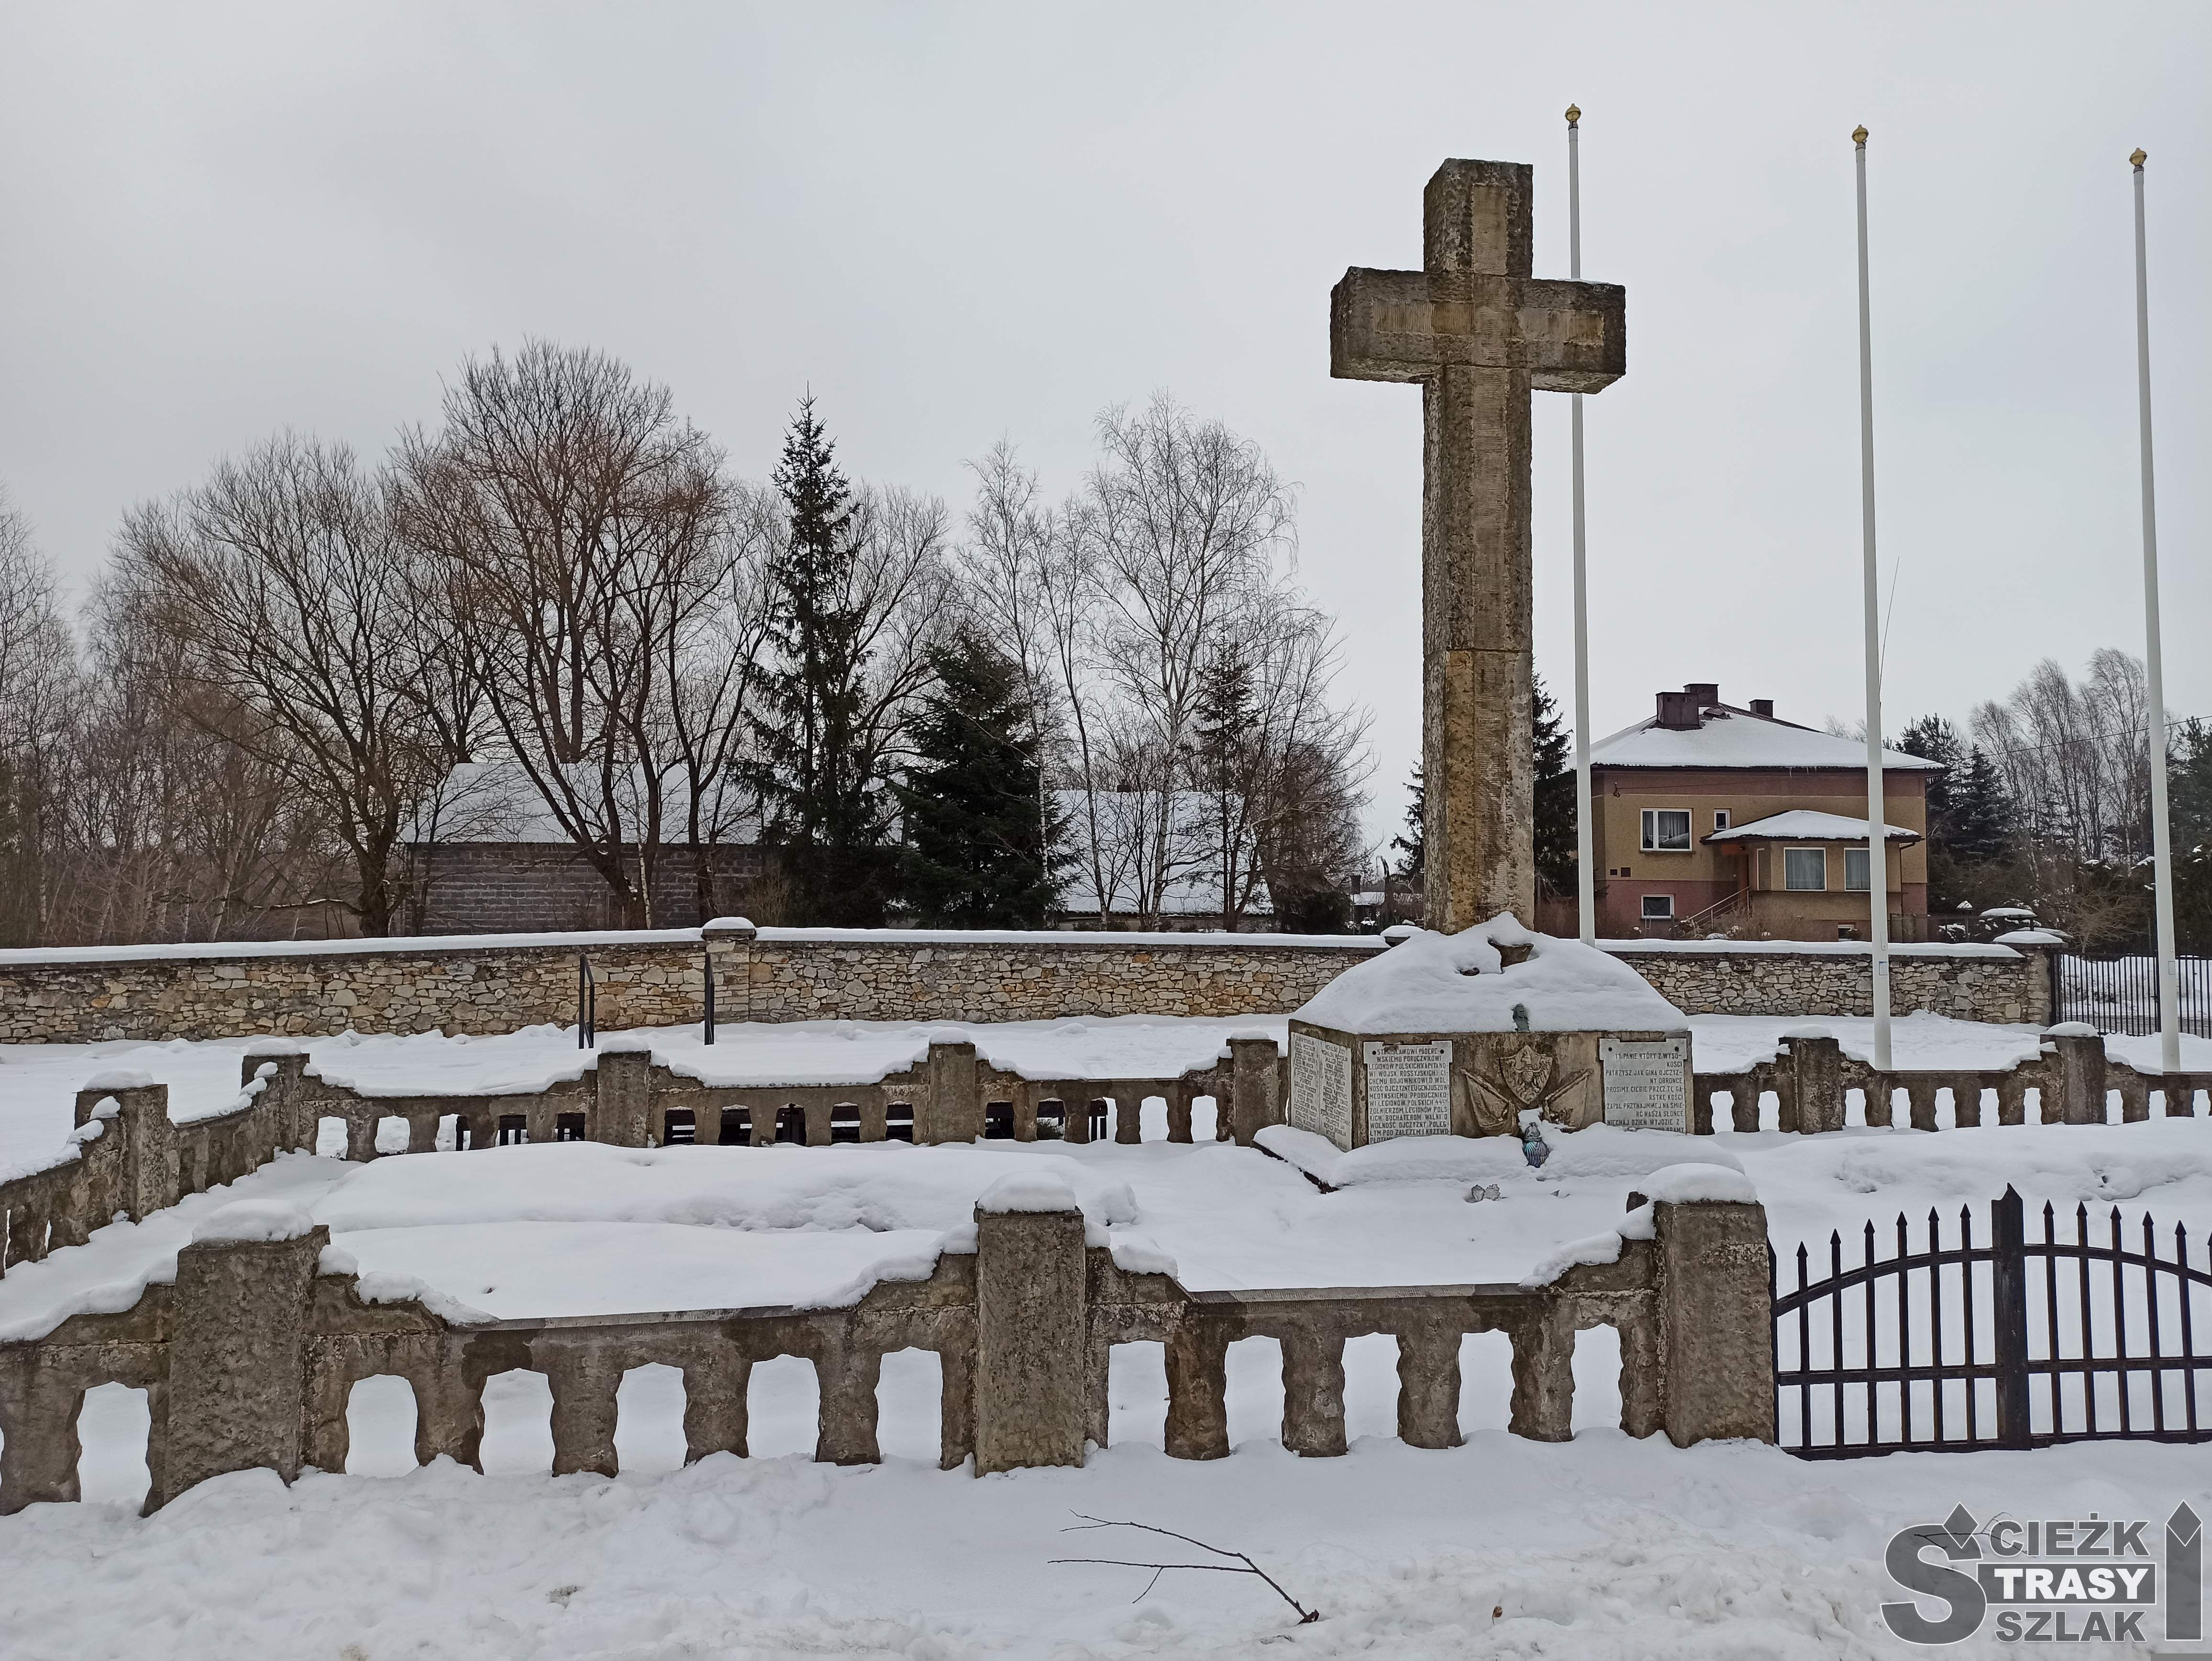 Wysoki krzyż na cmentarzu w Bydlinie z nazwiskami legionistów poległych w Bitwie pod Krzywopłotami